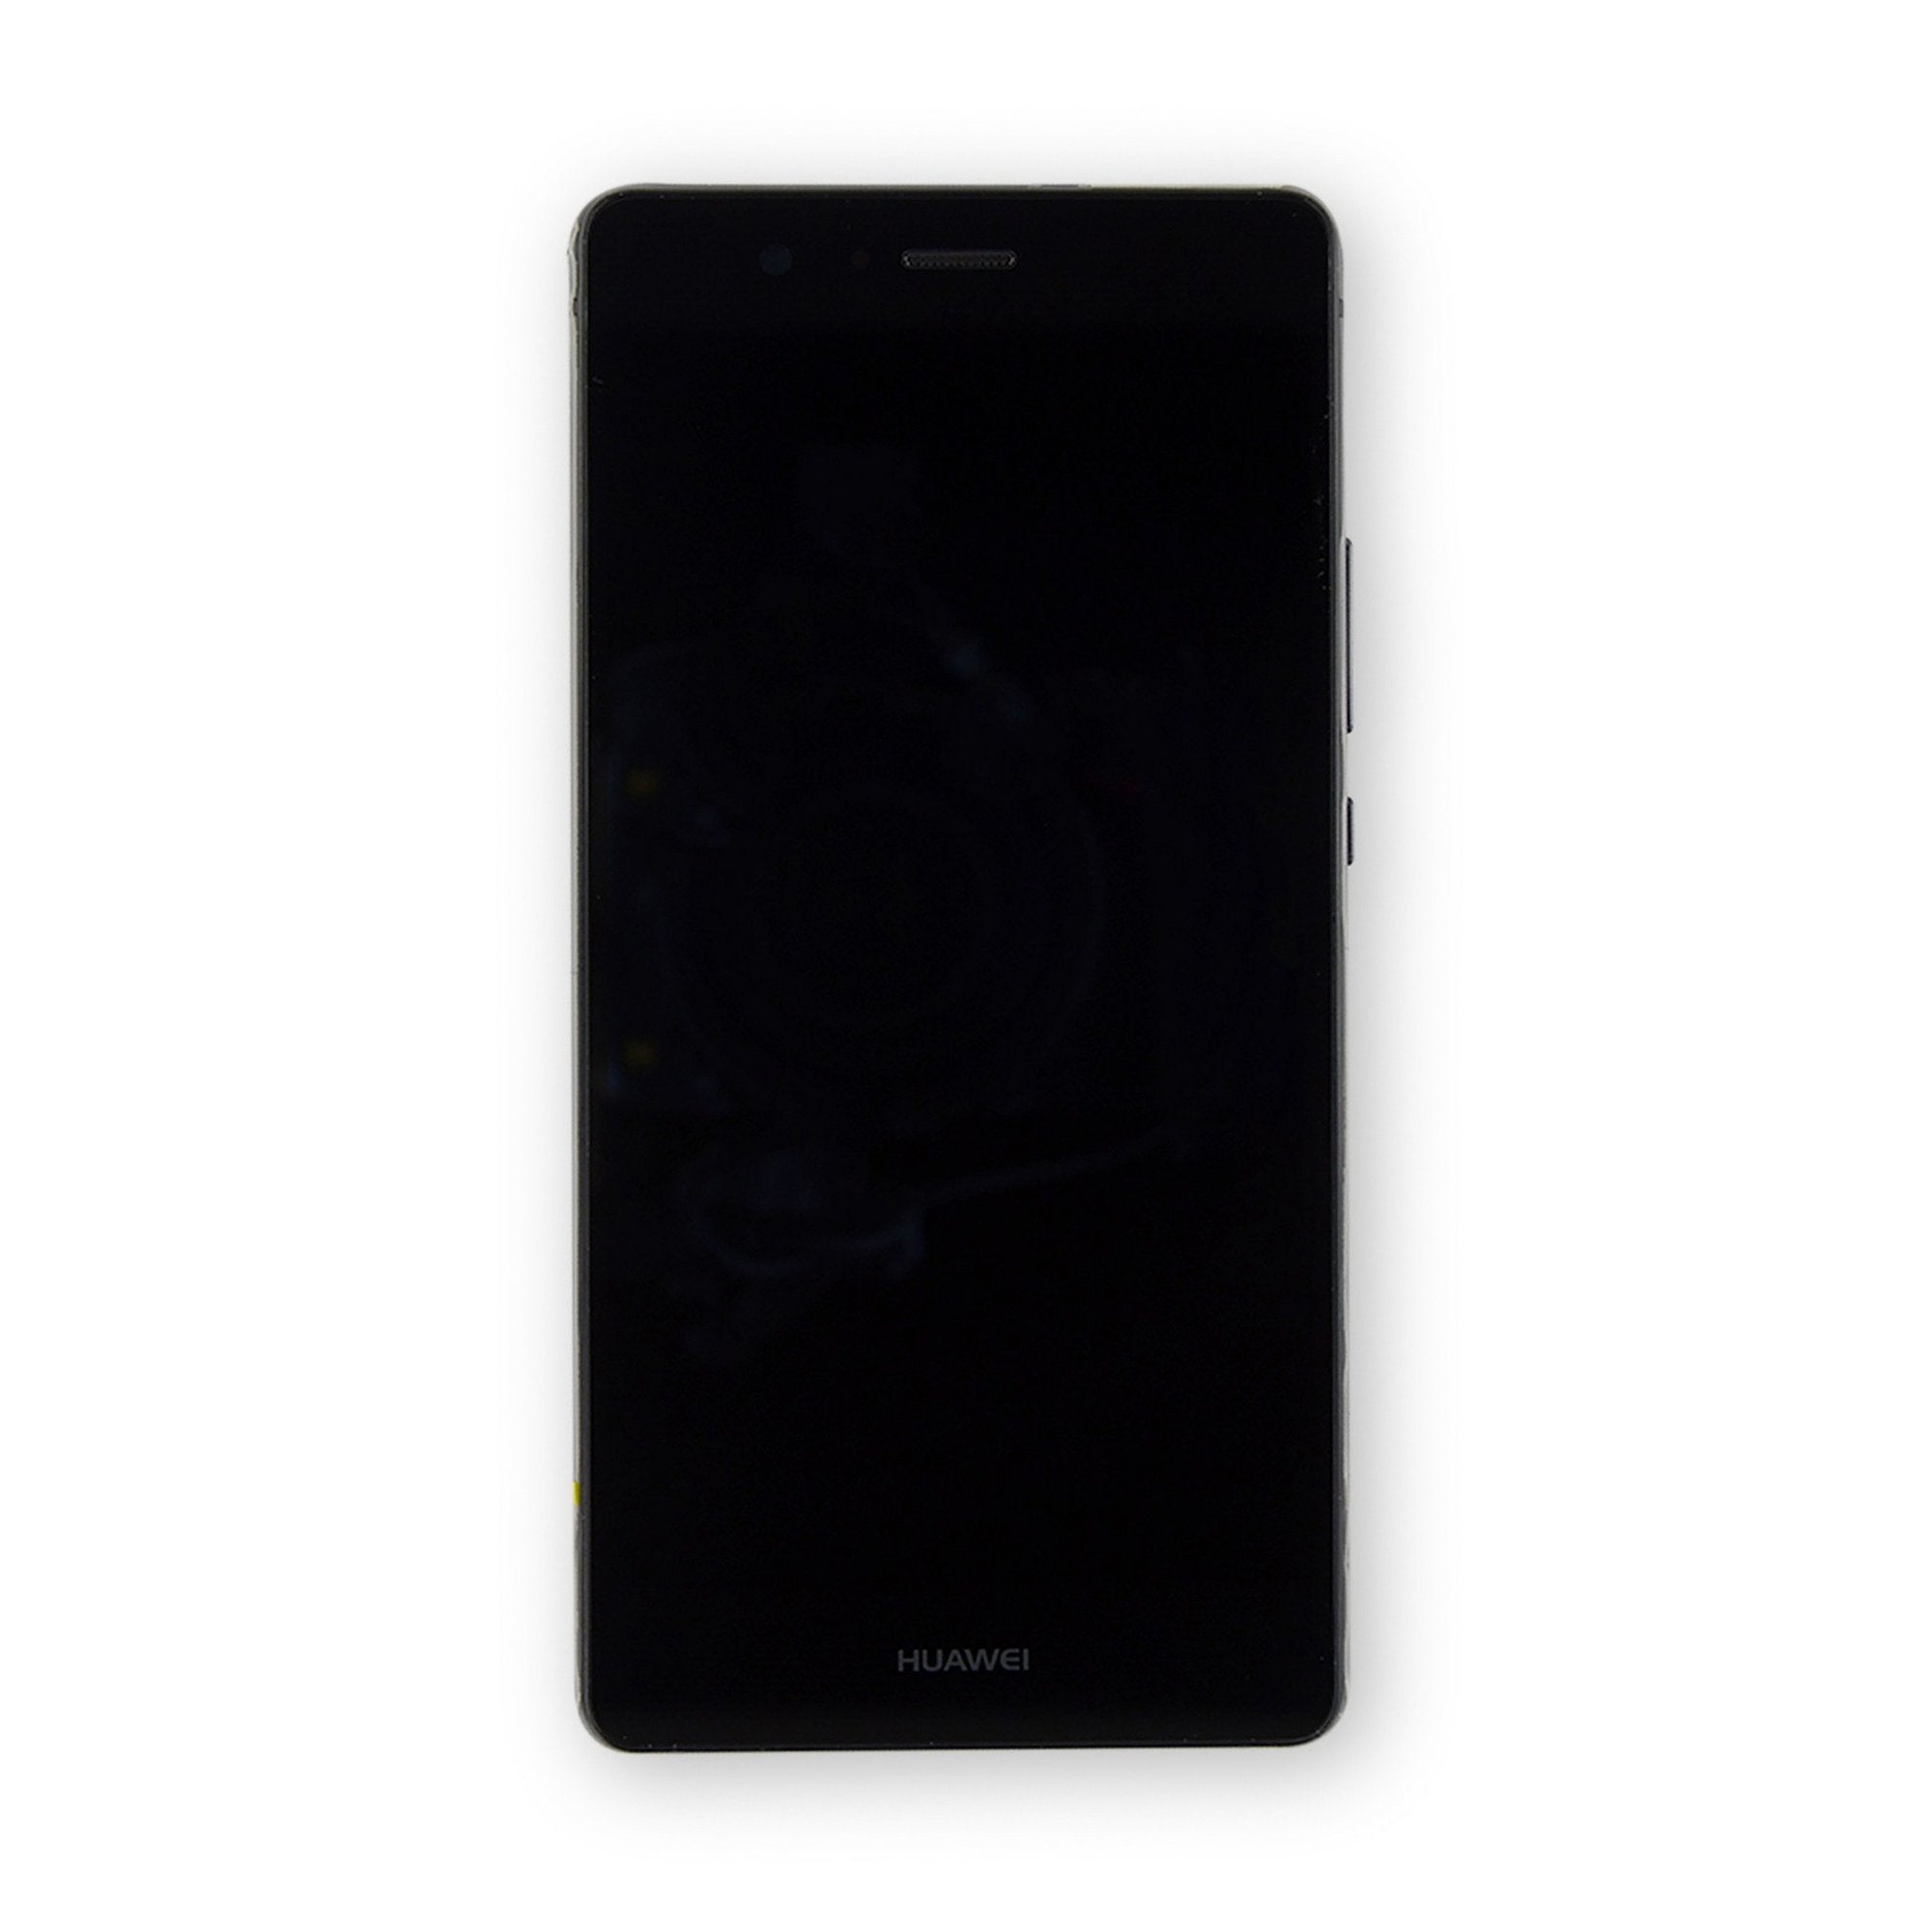 Frons wees onder de indruk embargo Huawei P9 Lite Screen